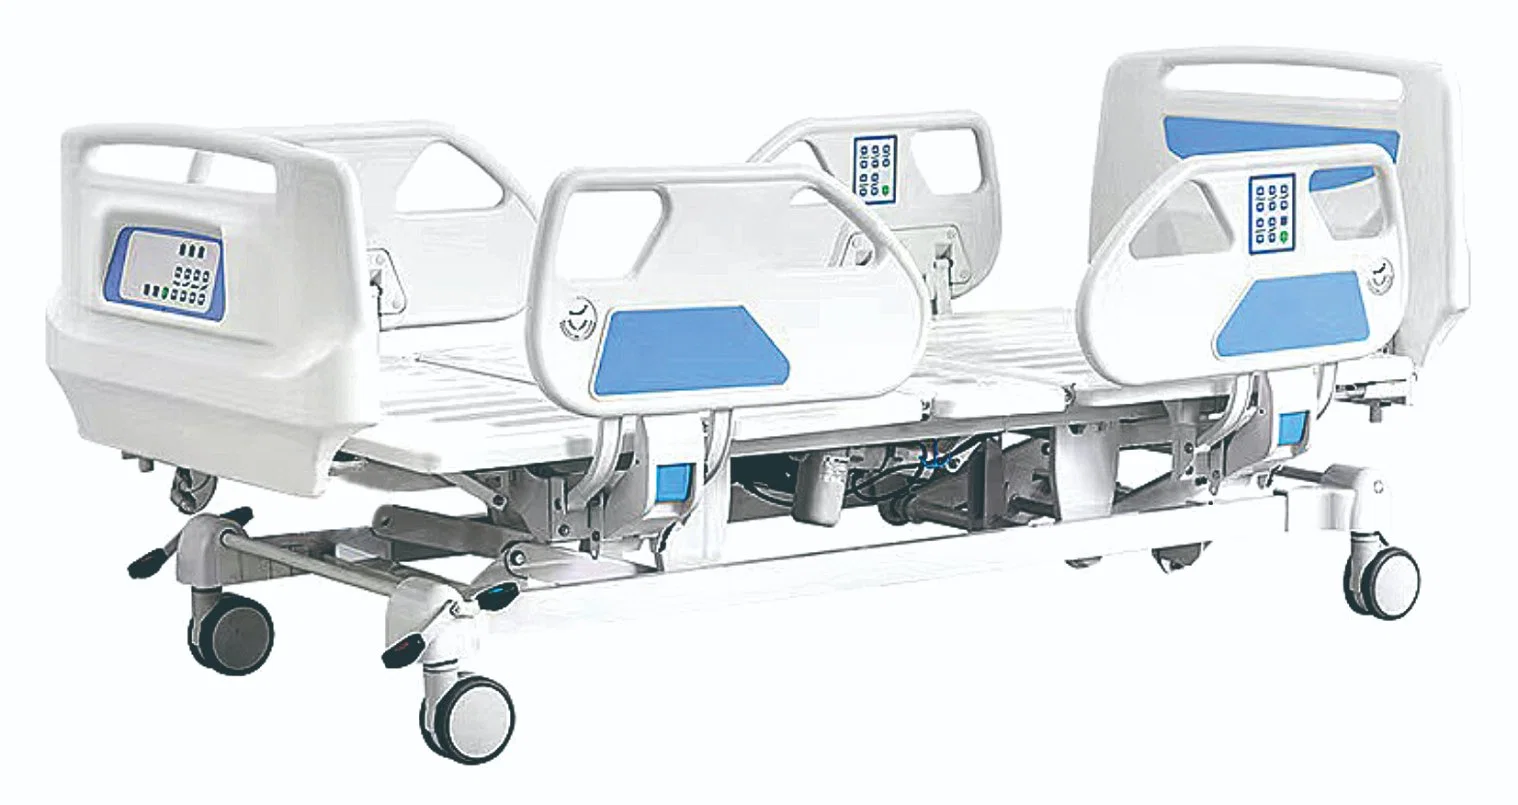 Roulettes portable multifonction réglable le pliage du métal mobilier médical lit électrique de l'Hôpital d'équipement médical